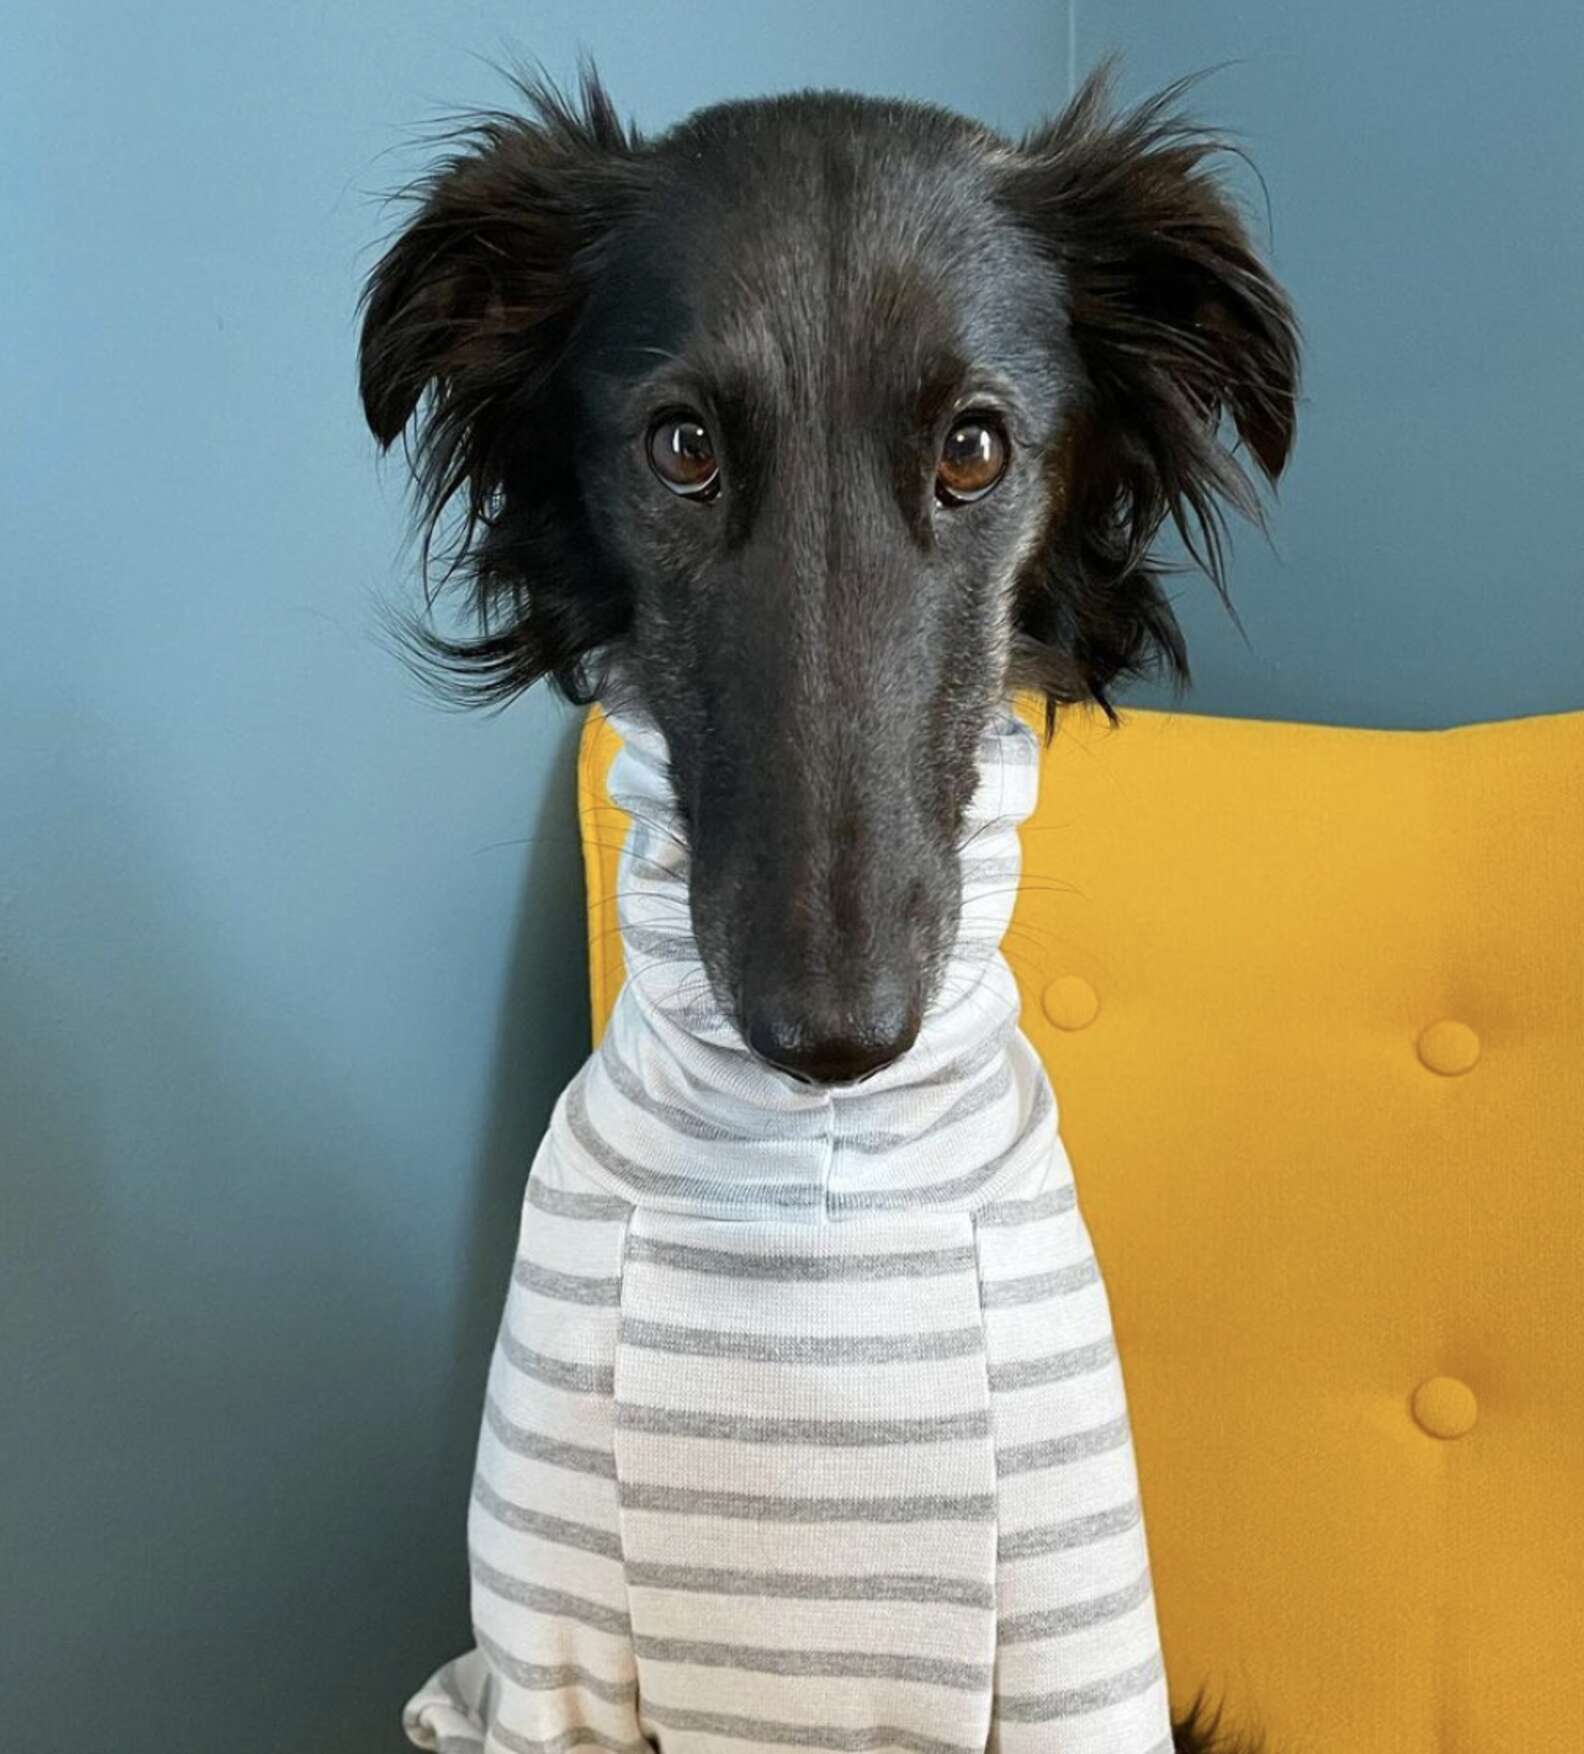 Long-Necked Dog Becomes Instagram Model for Turtlenecks